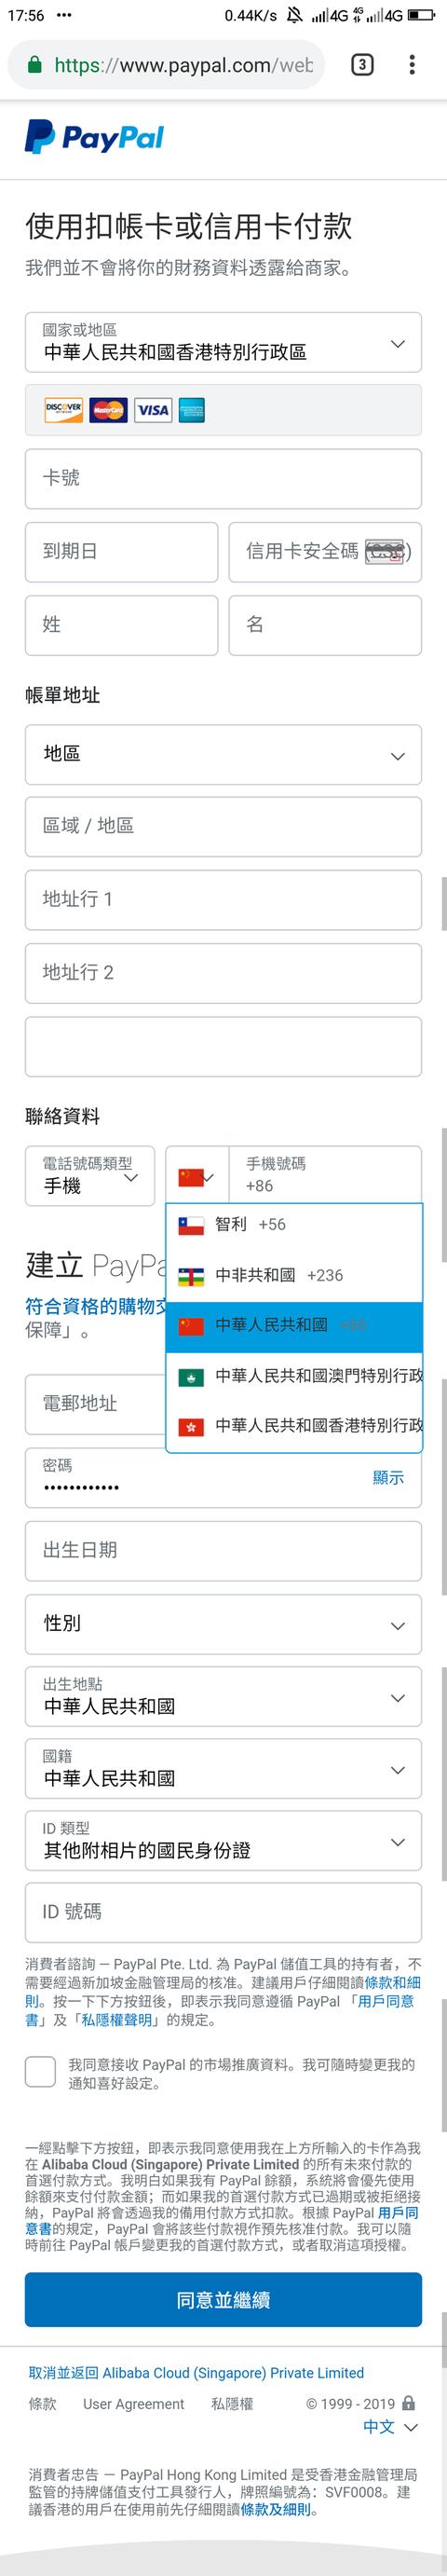 境外paypal账户注册（注册香港PayPal并绑定大陆手机号方法）